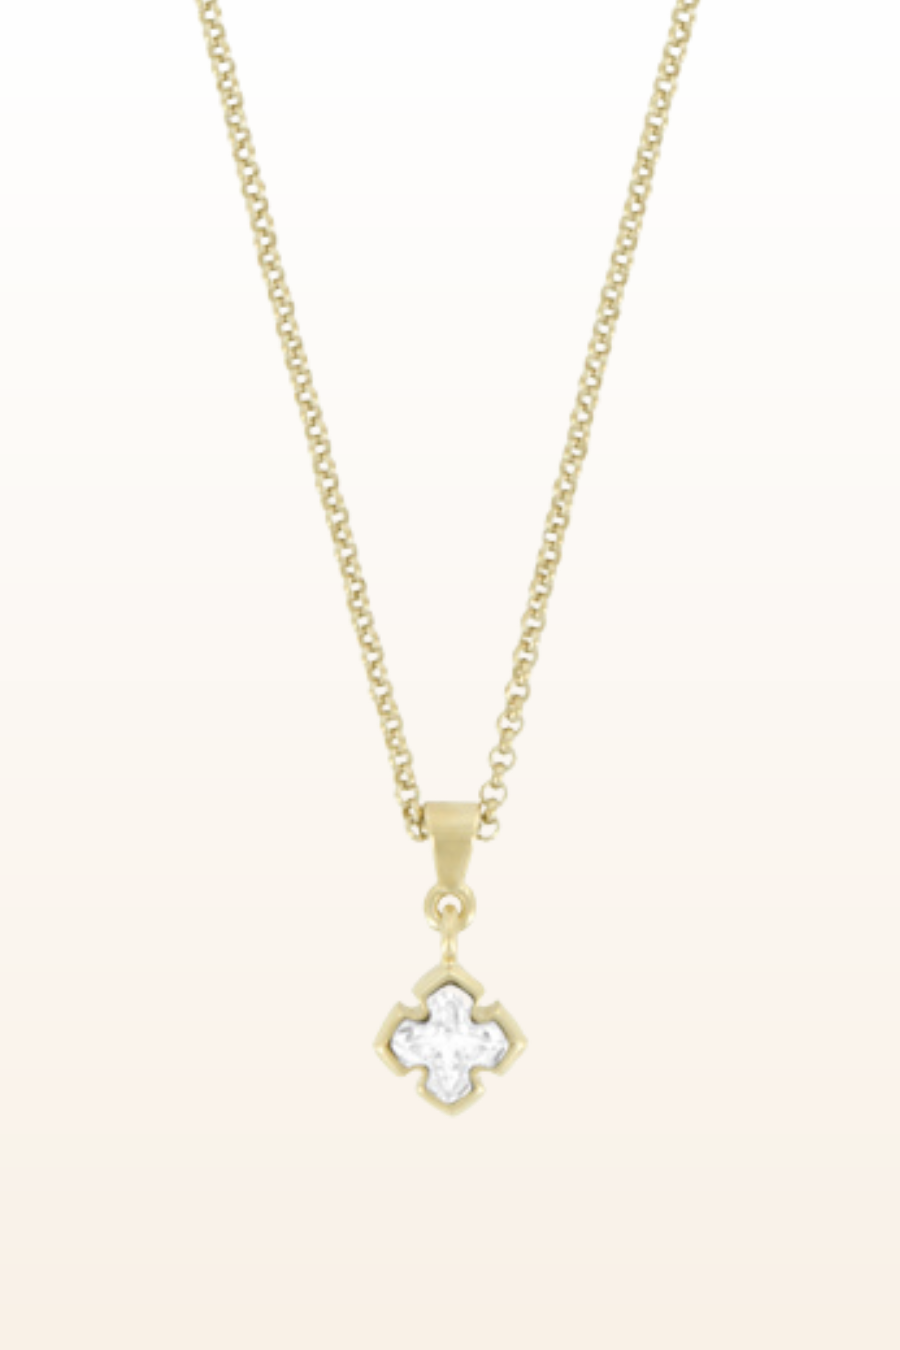 Matt Gold Small Cross Necklace